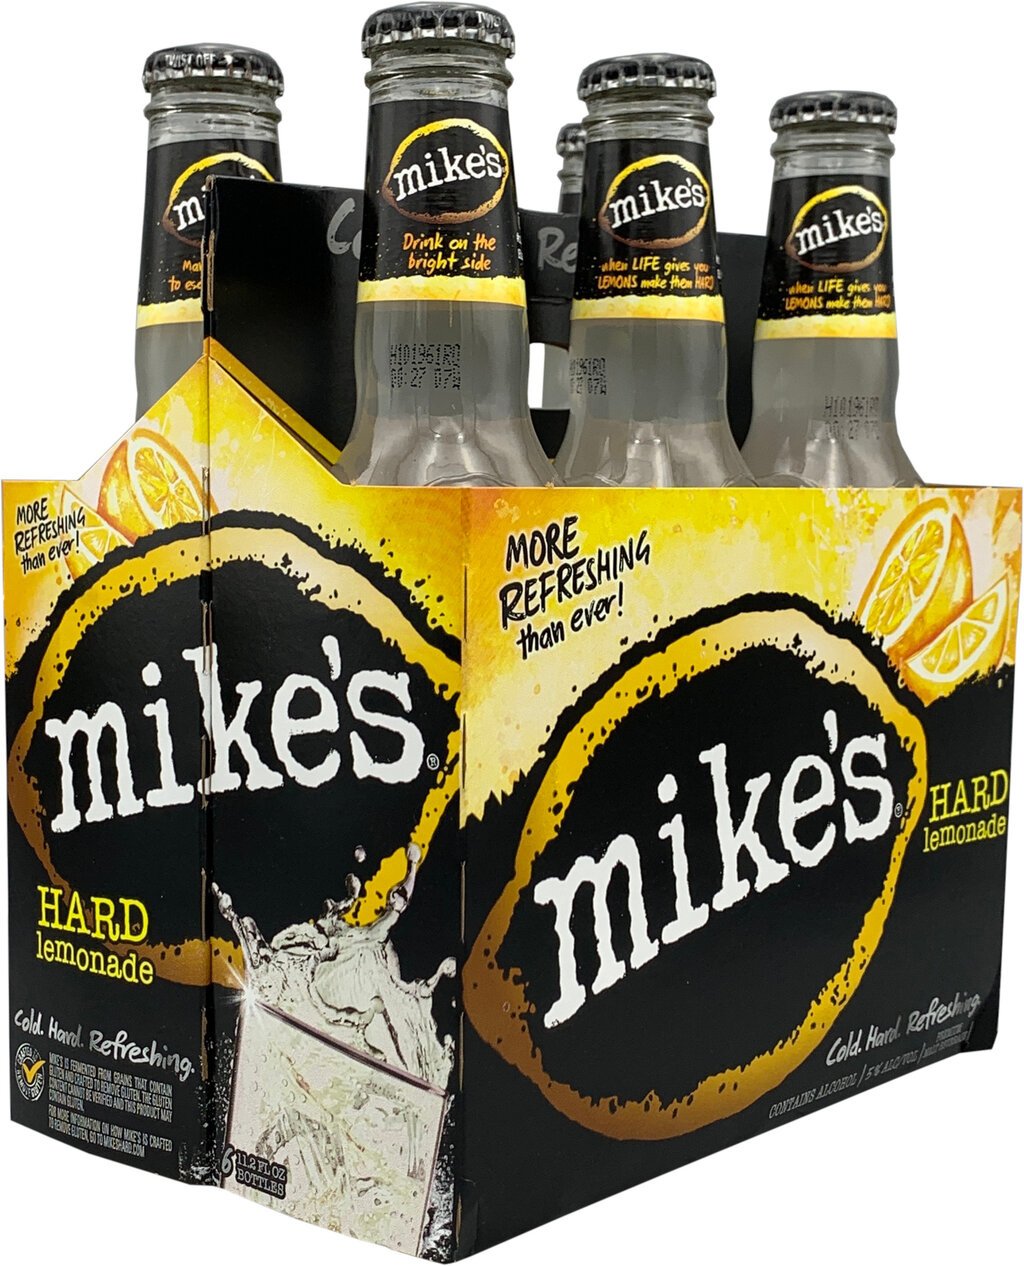 mikes-hard-lemonade-6pk-11-2oz-bottle-cork-n-bottle